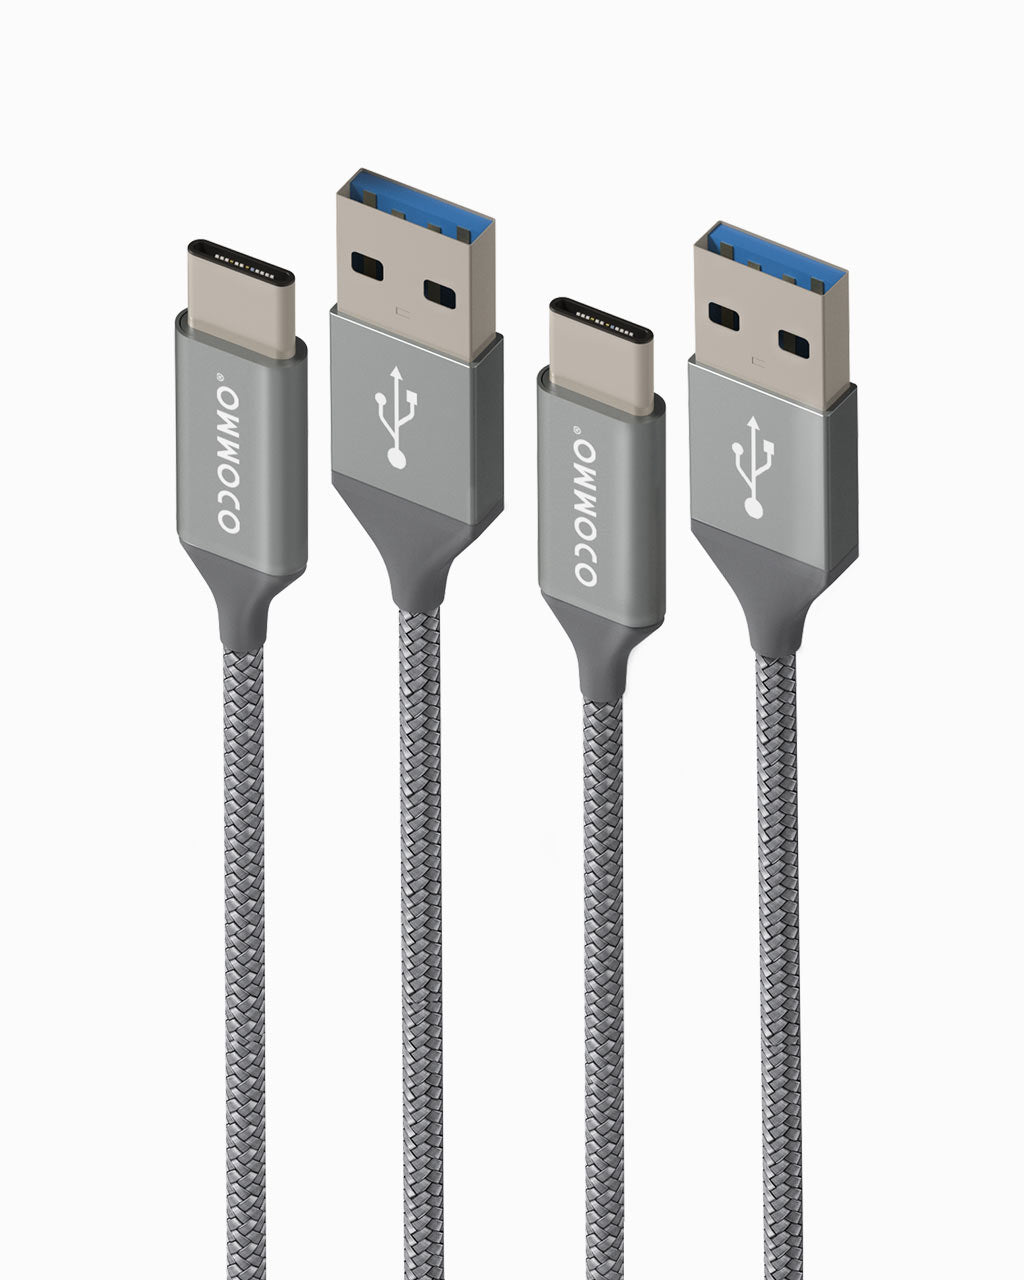 OCOMMO Basic 2 Set USB-C Cable 6.6ft